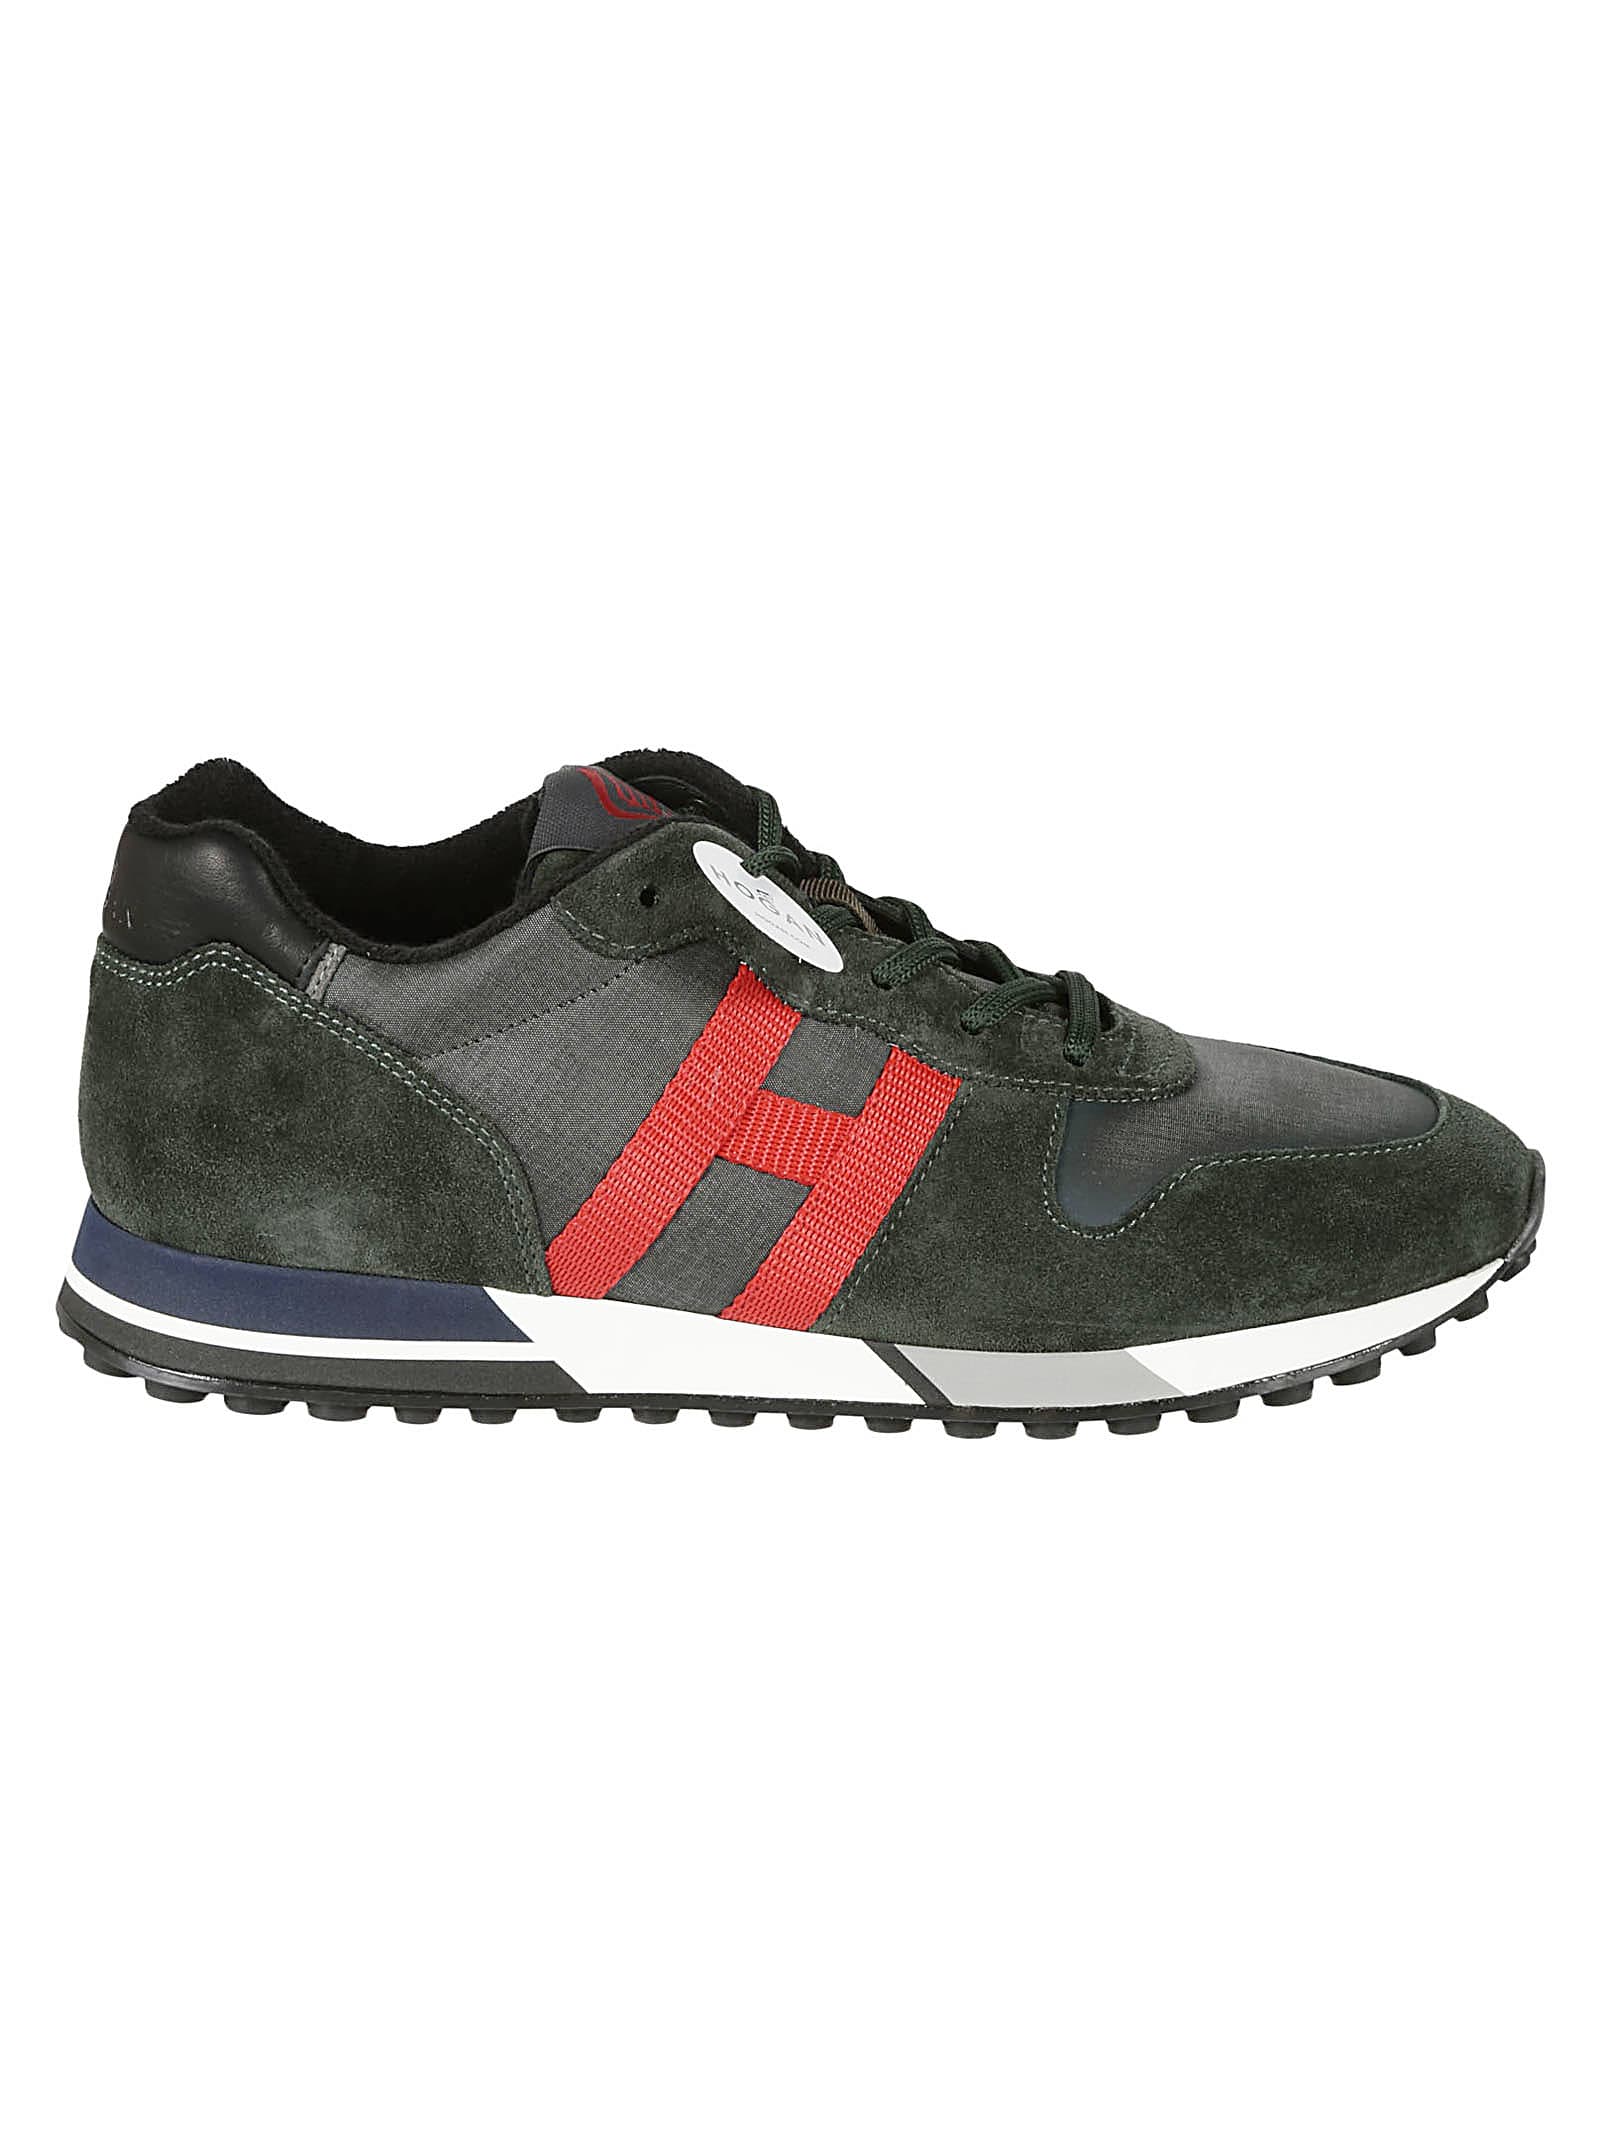 Hogan H383 H Nastro Sneakers